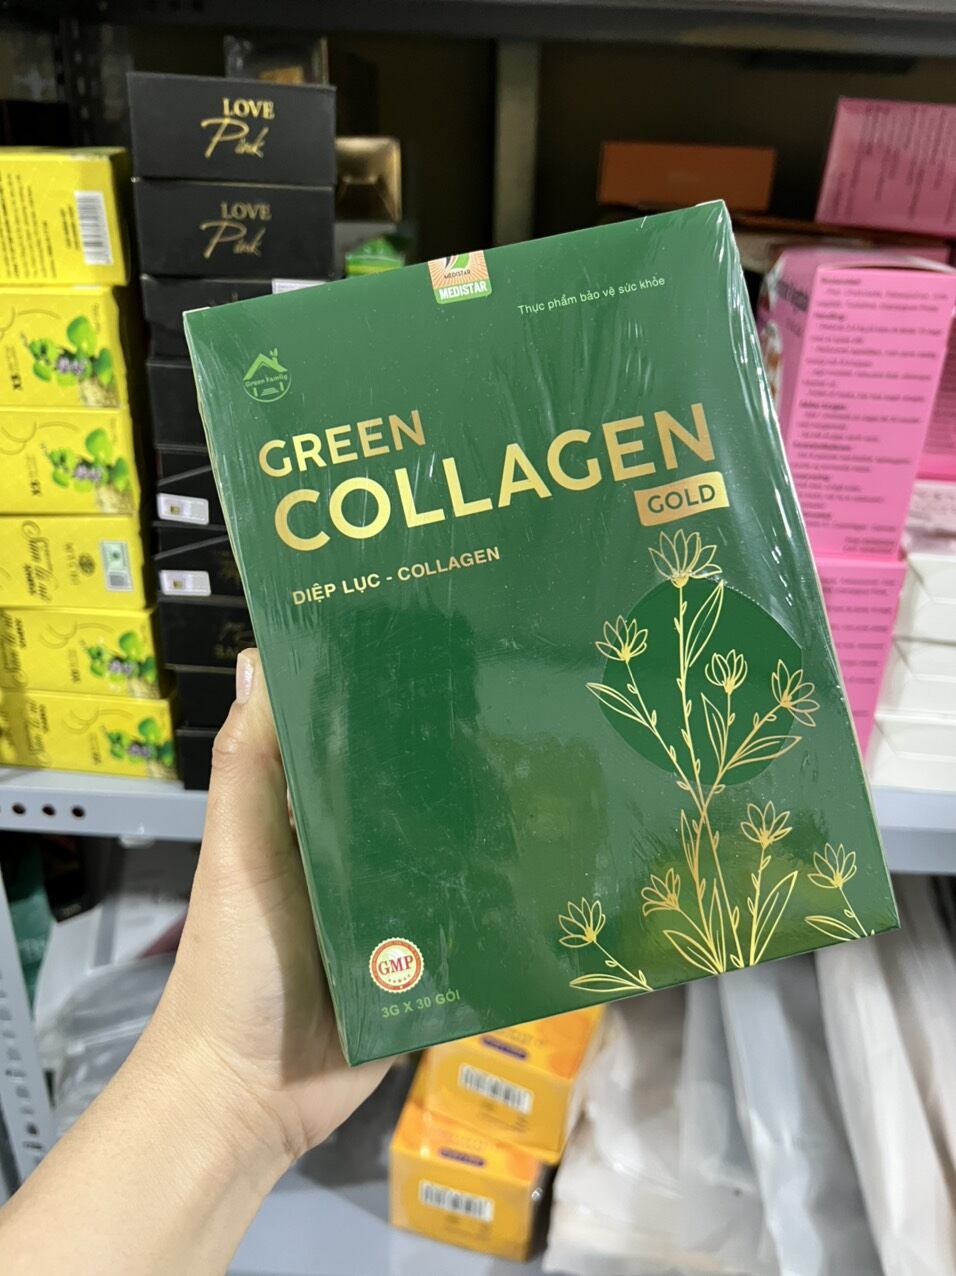 Diệp lục Green Collagen Gold chính hãng nguyên tem hộp 30 gói